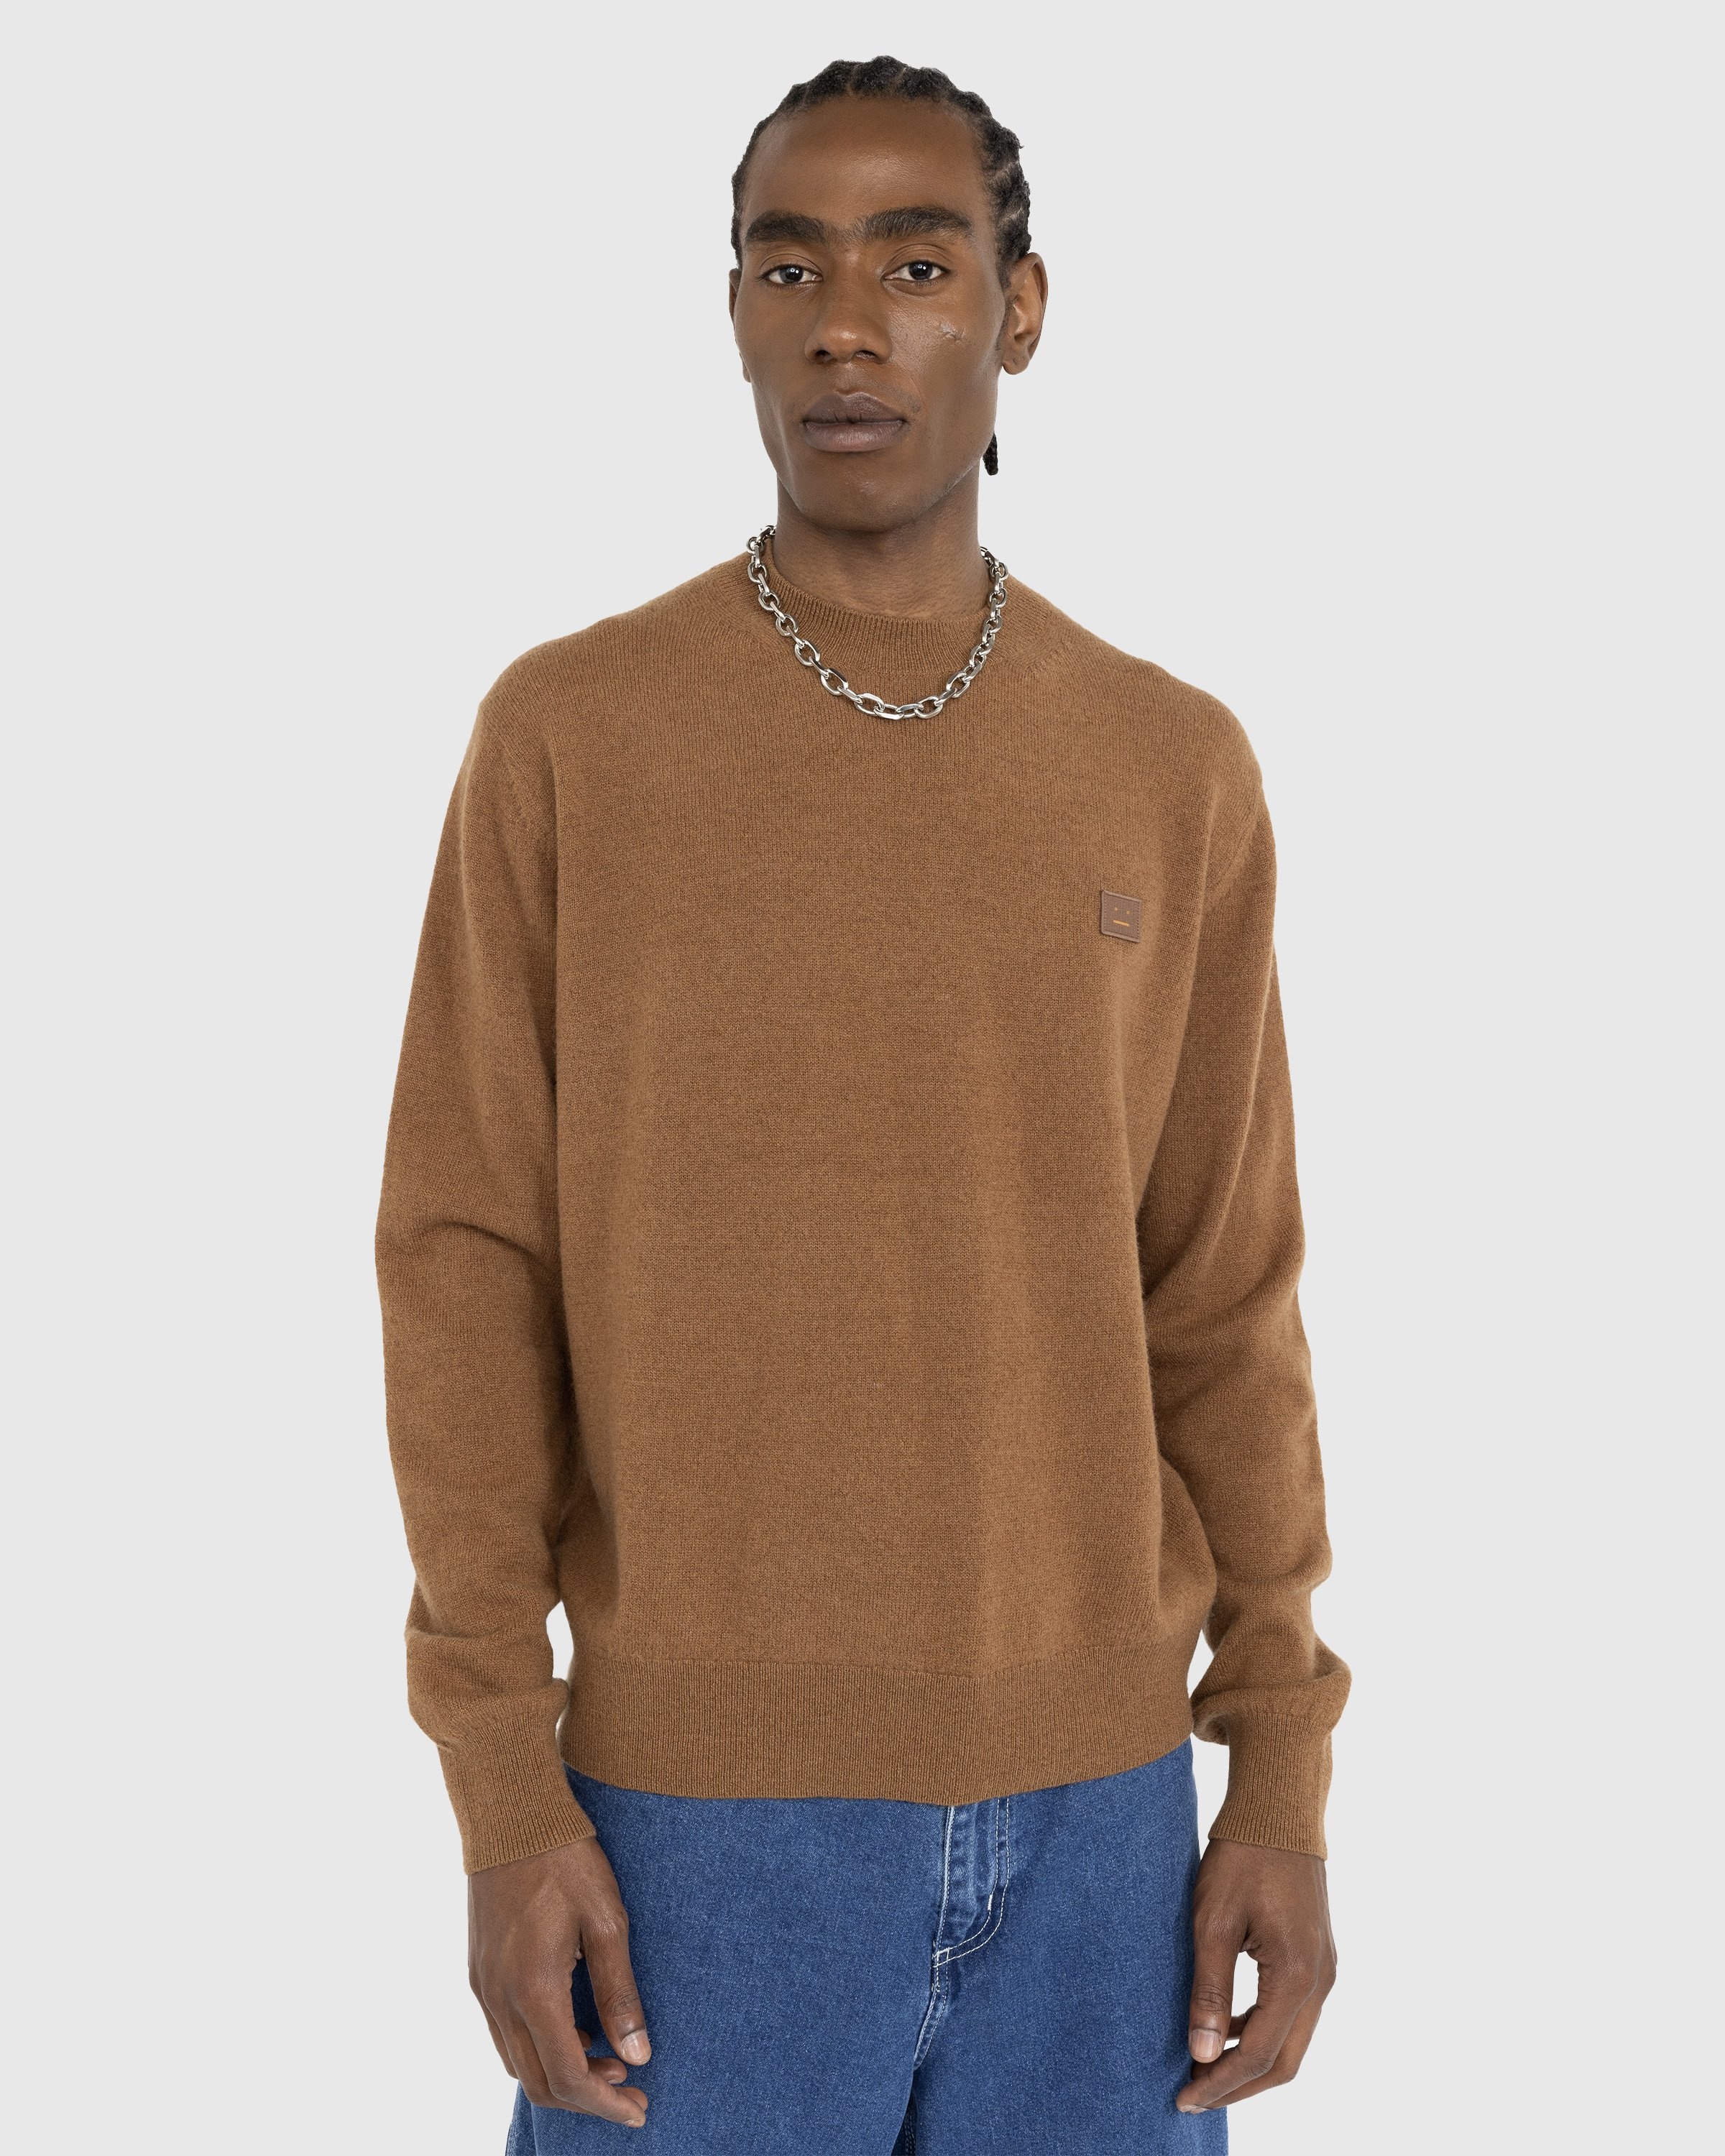 Acne Studios – Wool Crewneck Sweater Toffee Brown - Knitwear - Brown - Image 2